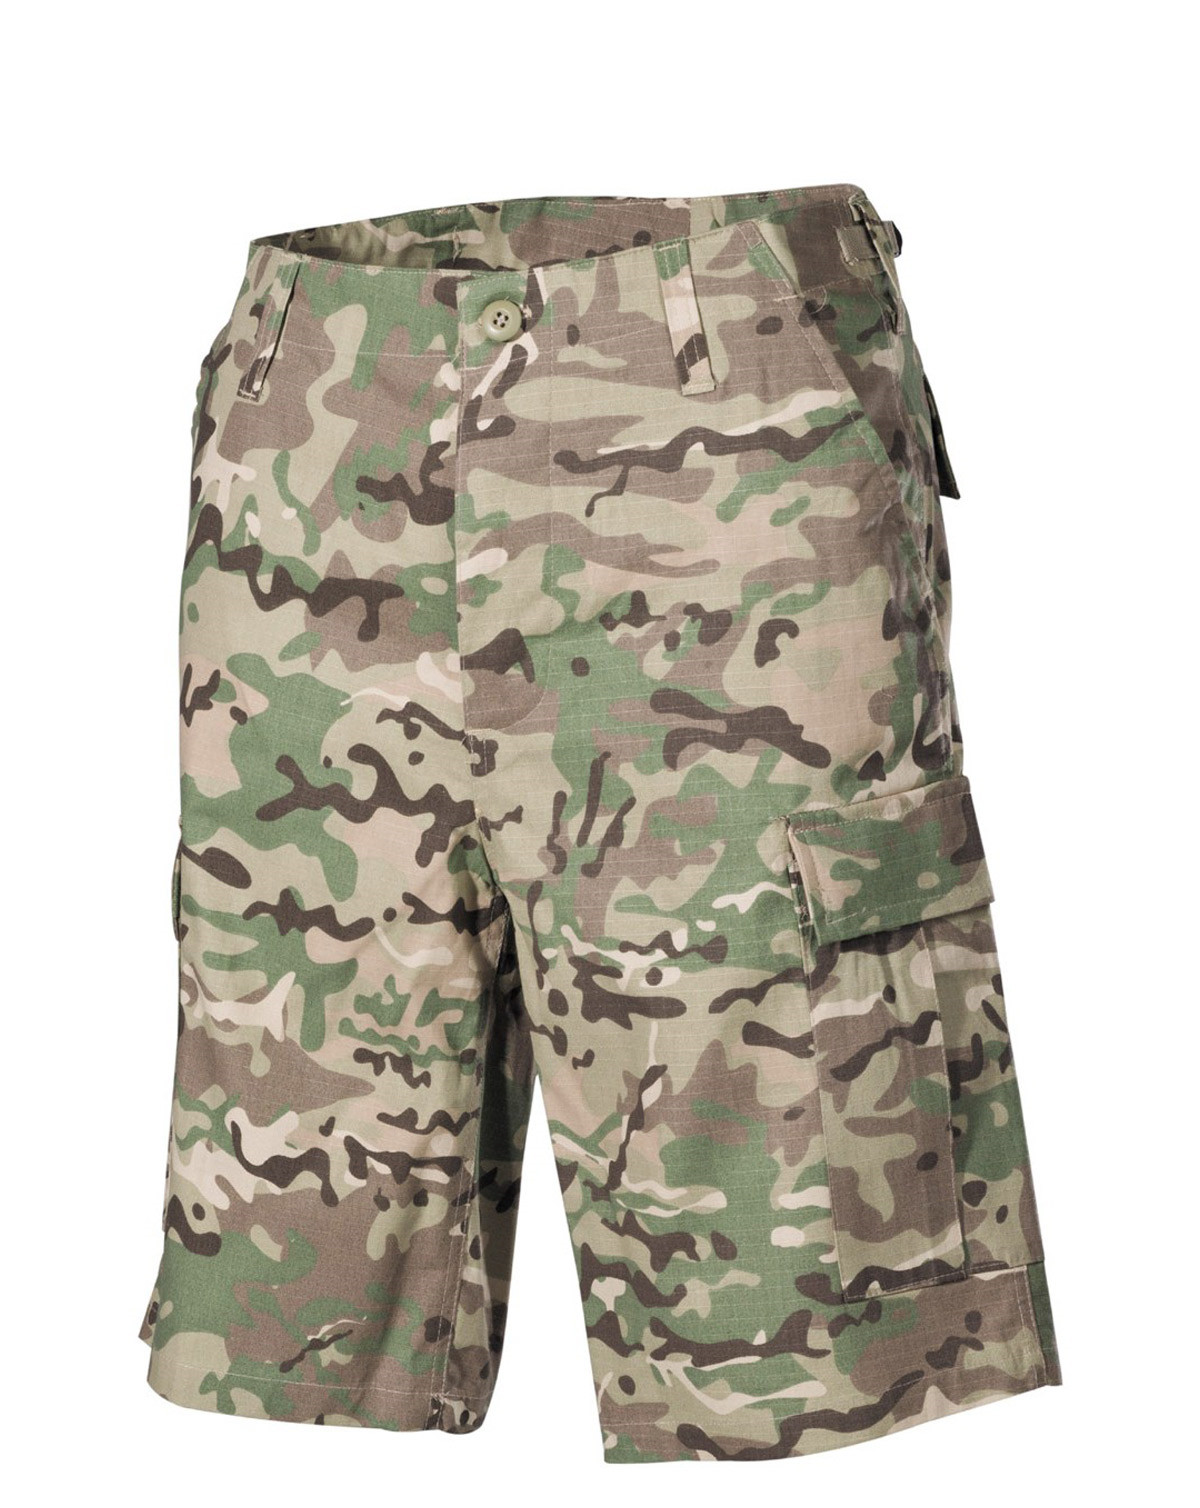 MFH U.S. BDU Bermuda shorts (Multi Camo, S)